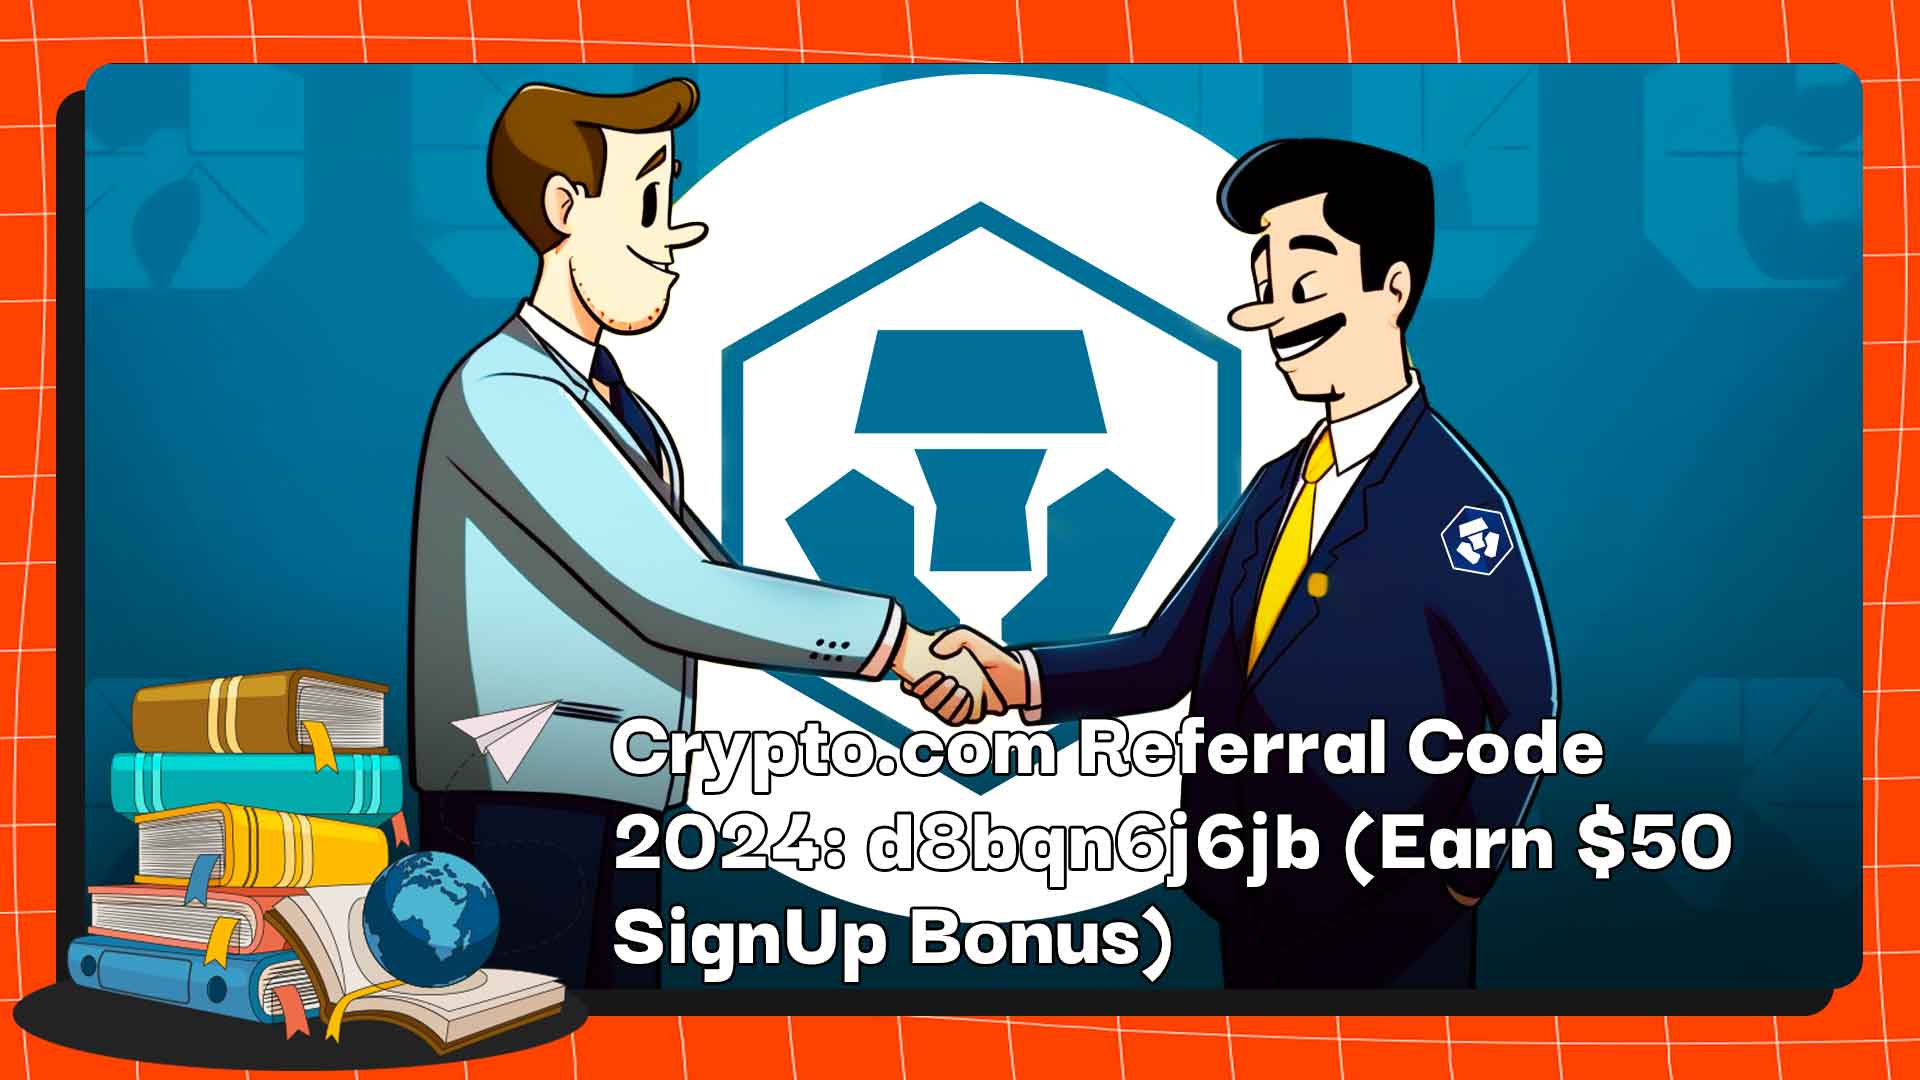 Mã giới thiệu Crypto.com 2024: d8bqn6j6jb (Kiếm $50 tiền thưởng khi đăng ký)